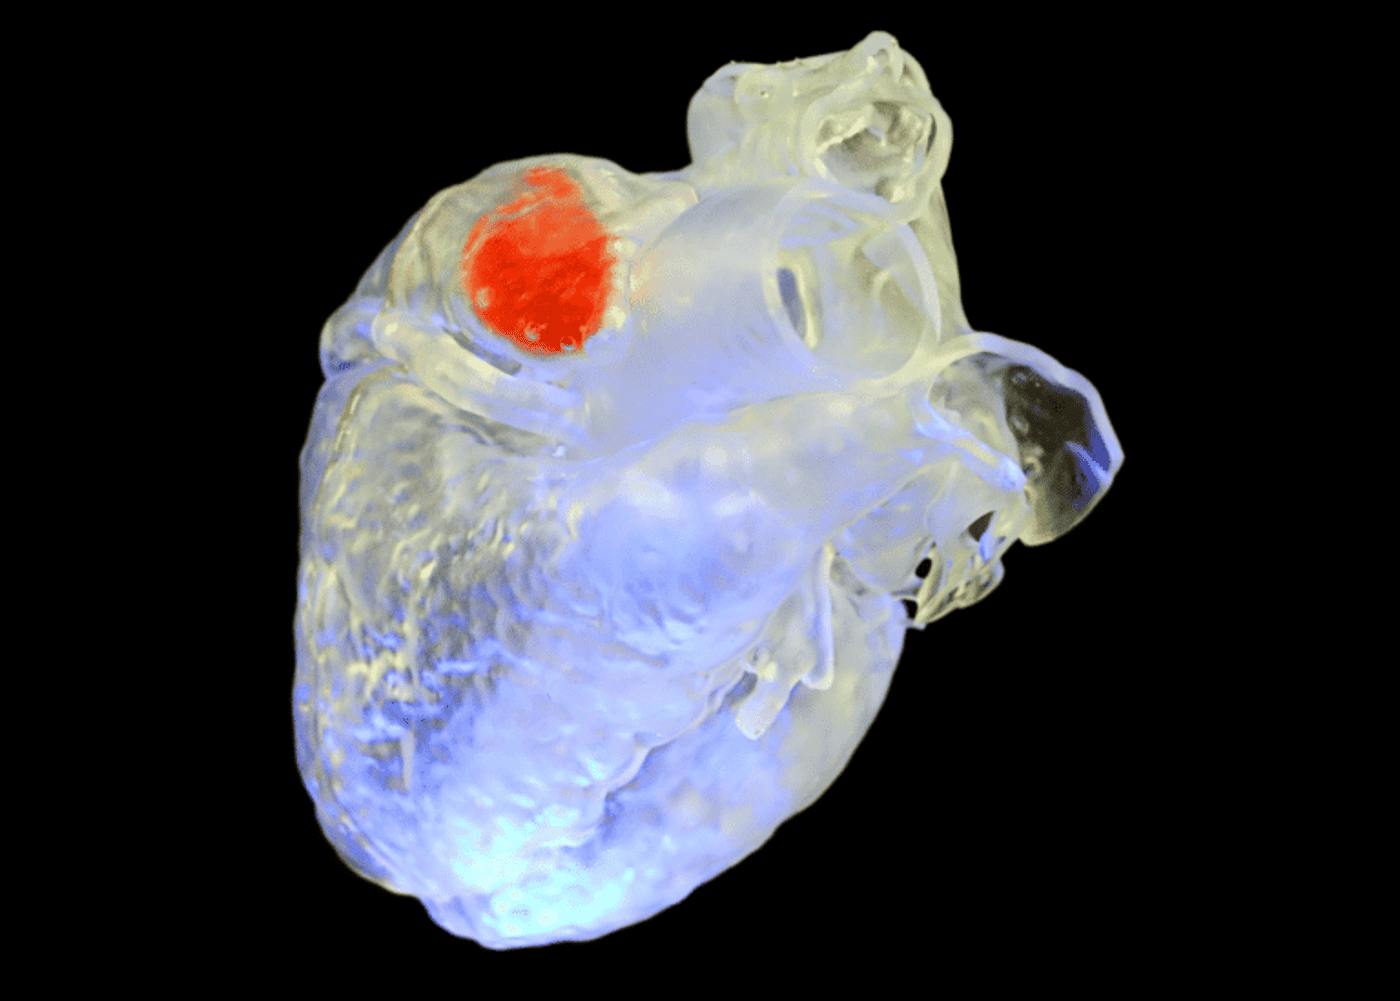 Nova técnica facilita impressões 3D de órgãos humanos